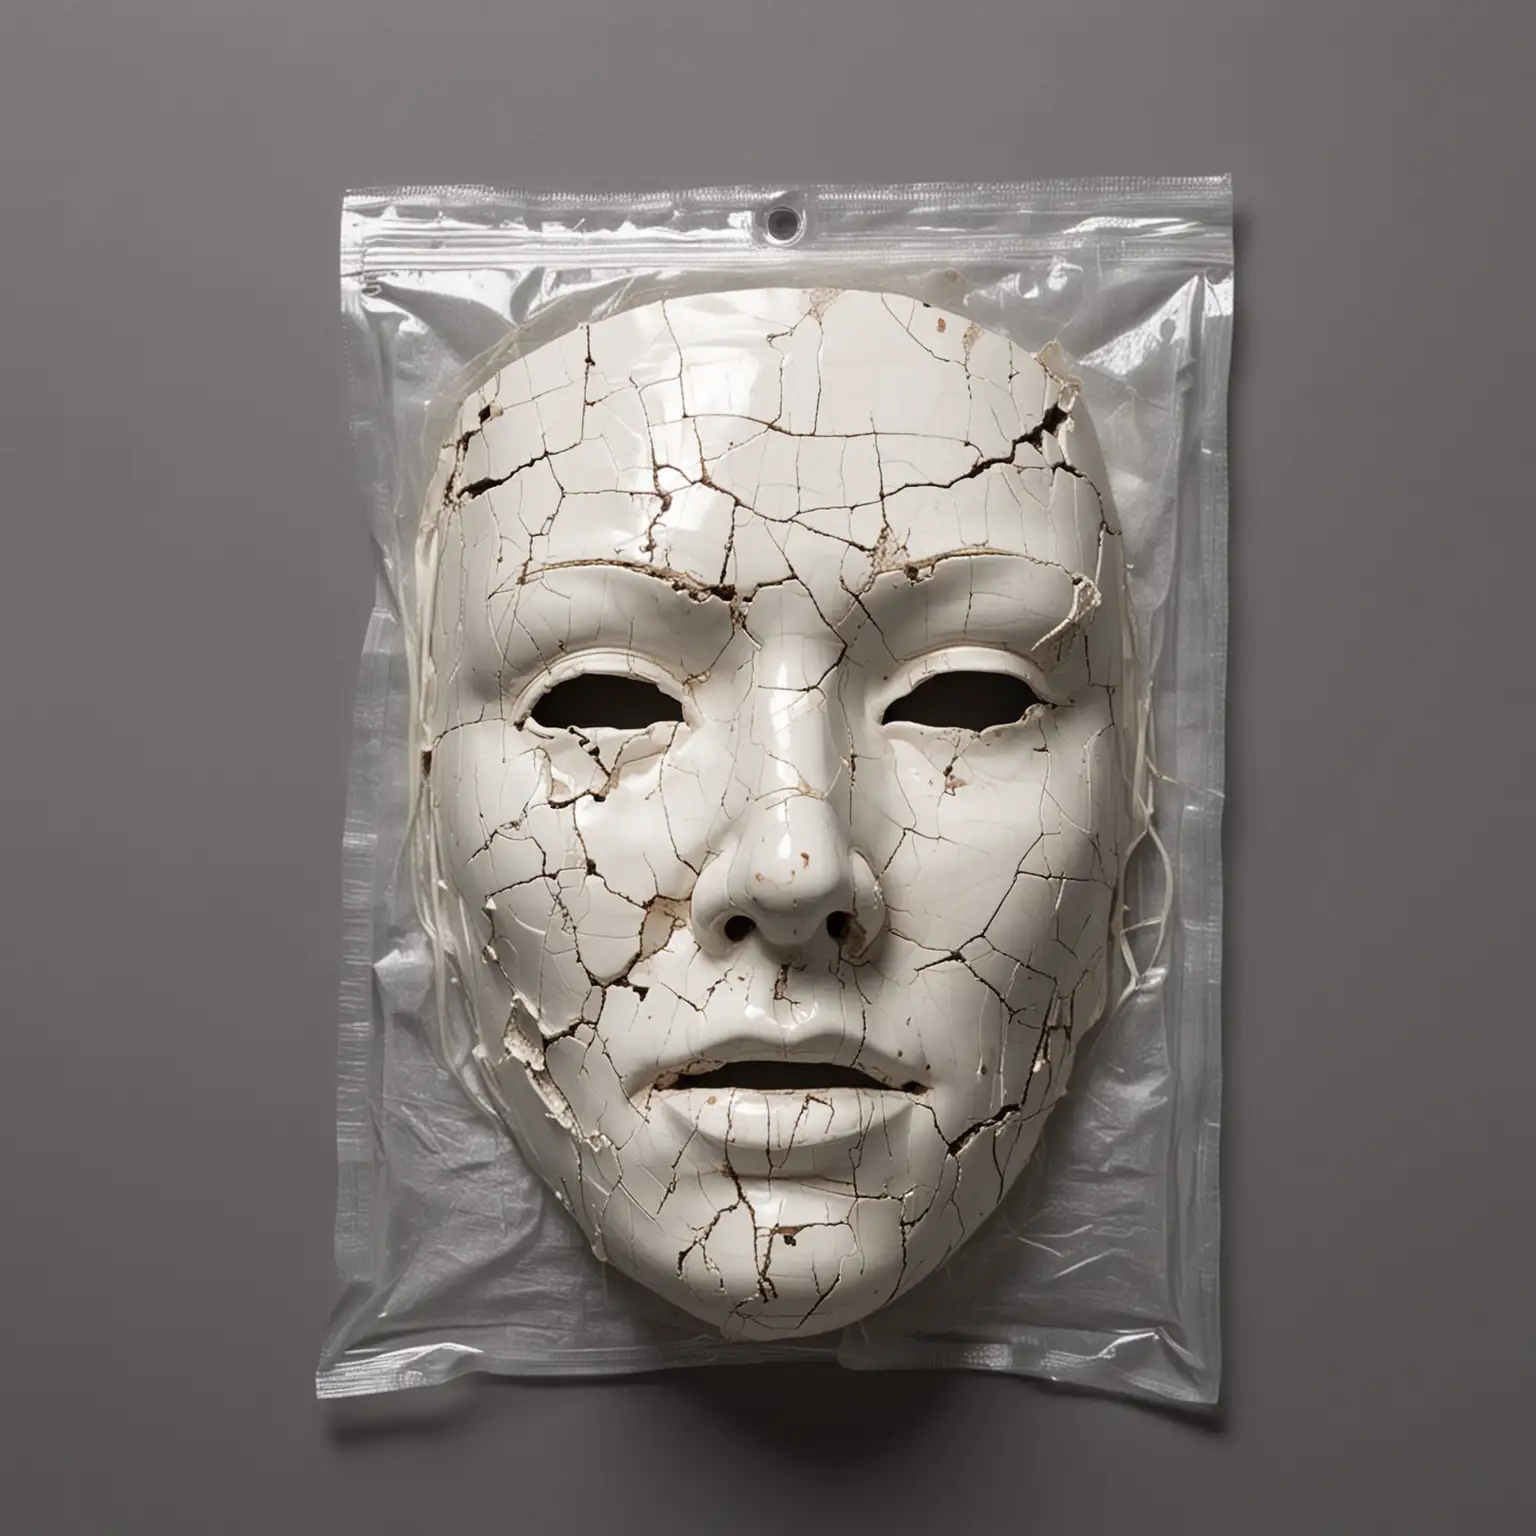 Broken Porcelain Mask in Police Evidence Bag